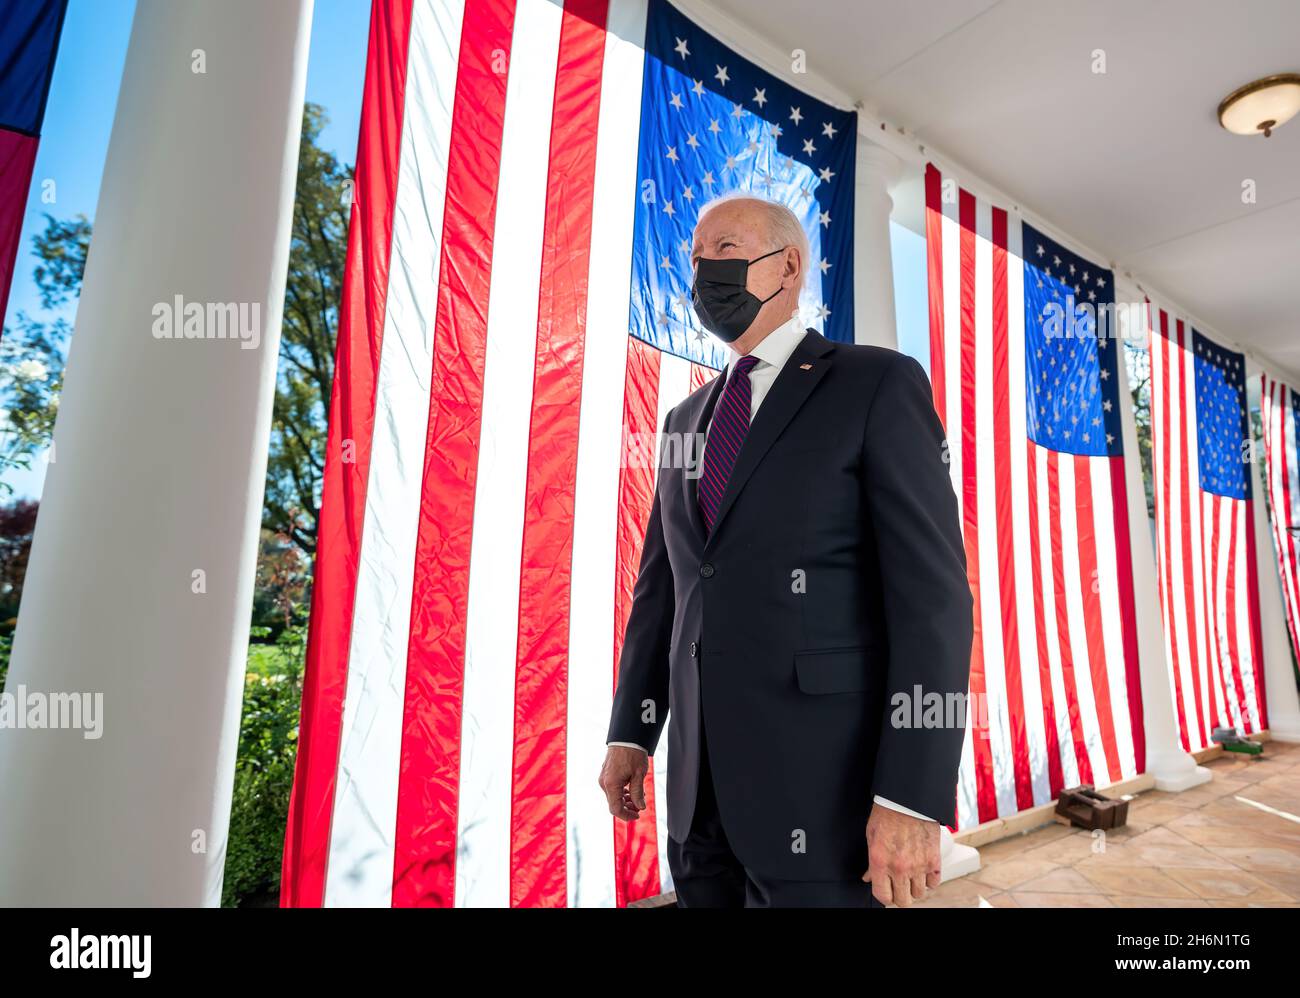 Präsident Joe Biden geht am Montag, den 15. November 2021, entlang der Kolonnade des Weißen Hauses an drapierten amerikanischen Flaggen vorbei, auf dem Weg zur Residenz. (Offizielles Foto des Weißen Hauses von Adam Schultz) Stockfoto